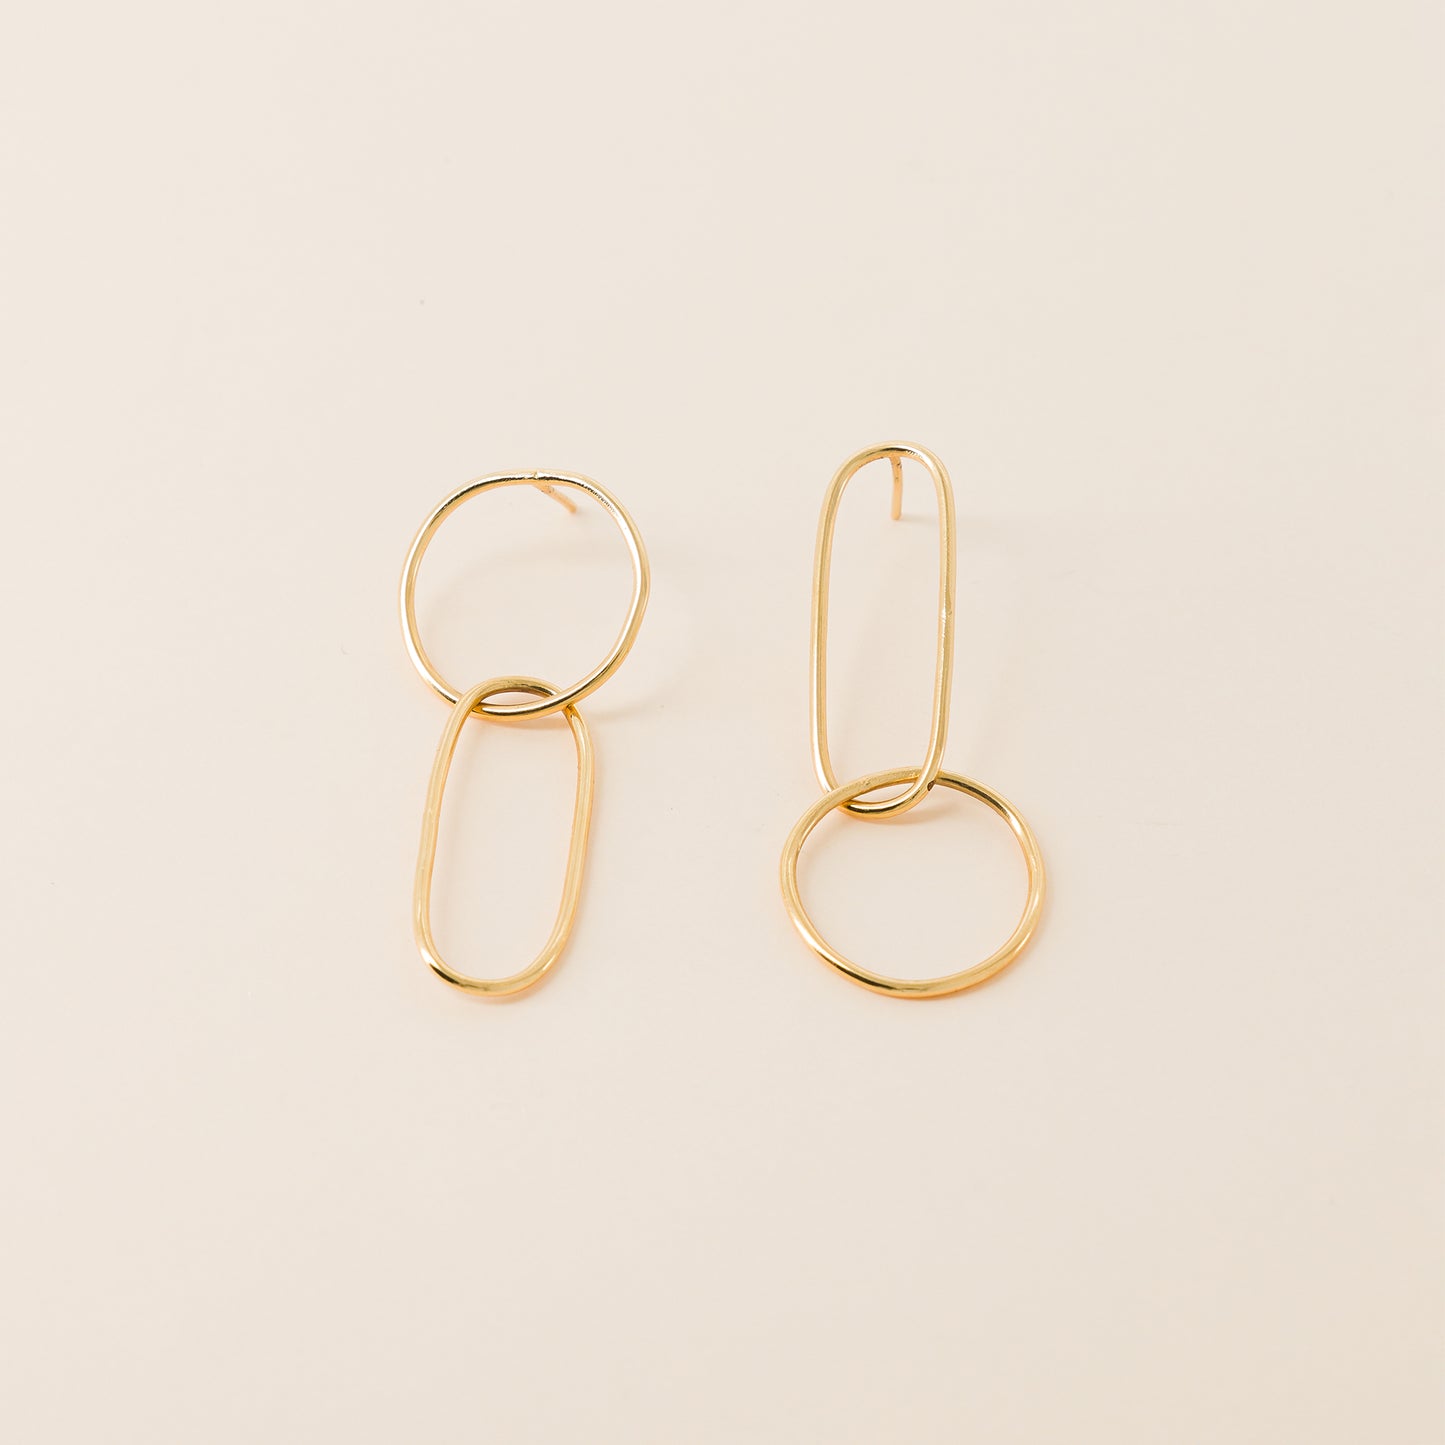 ​​Boucles d'oreilles dorées plaquées en or 18 carats de la marque de bijouterie fantaisie française ildephonse. Collection sur le fil. Boucles d'oreilles jeudi.